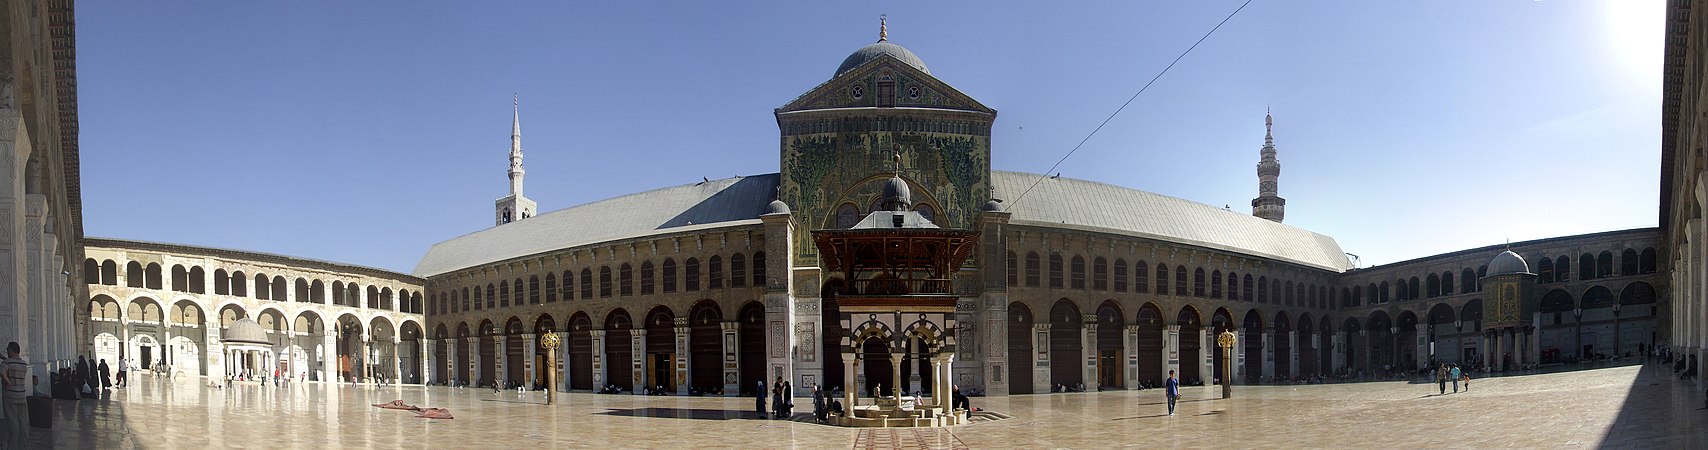 ساحة المسجد الأموي